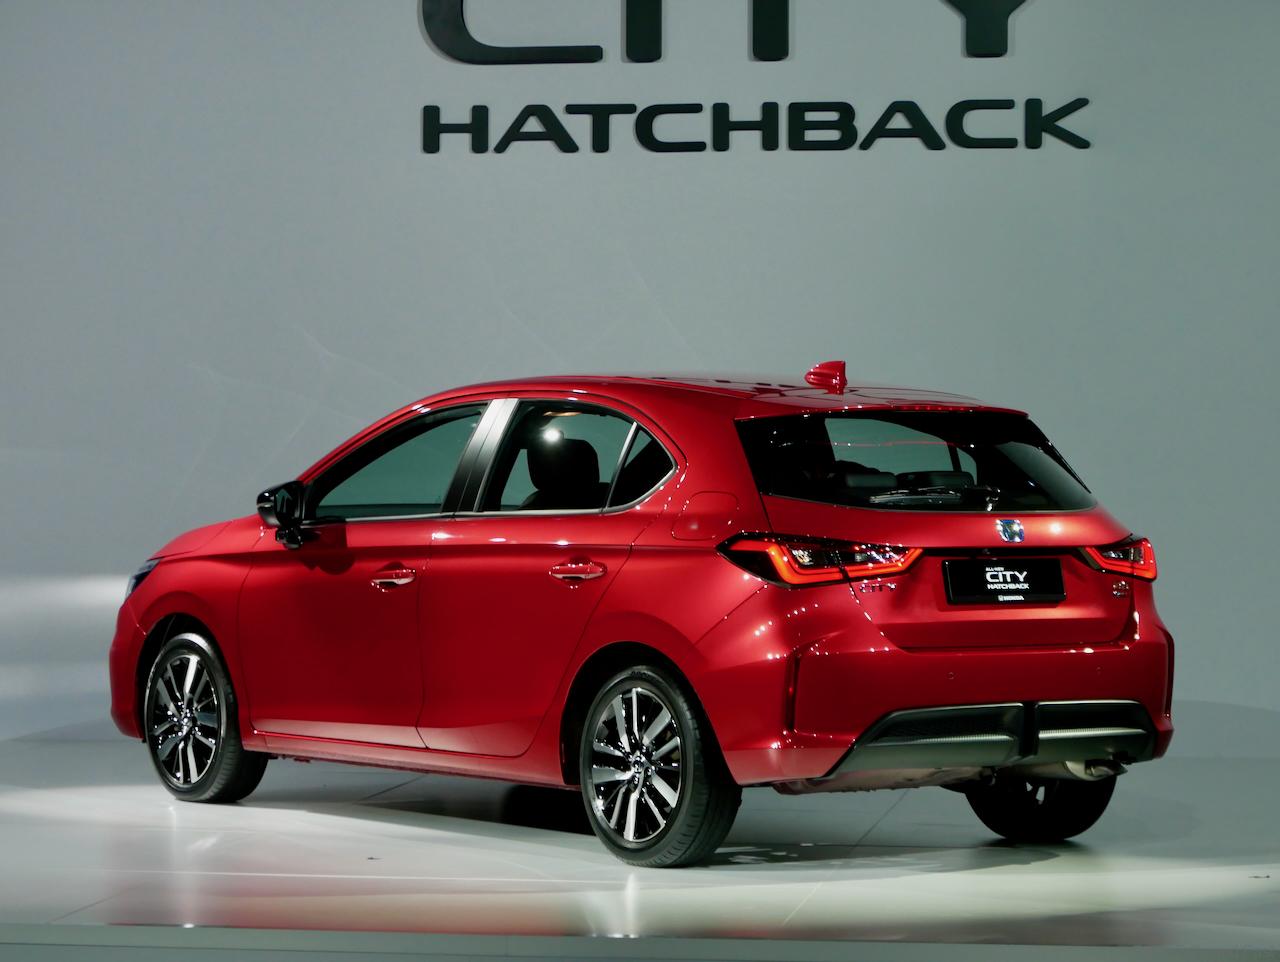 Honda city hatchback ad label